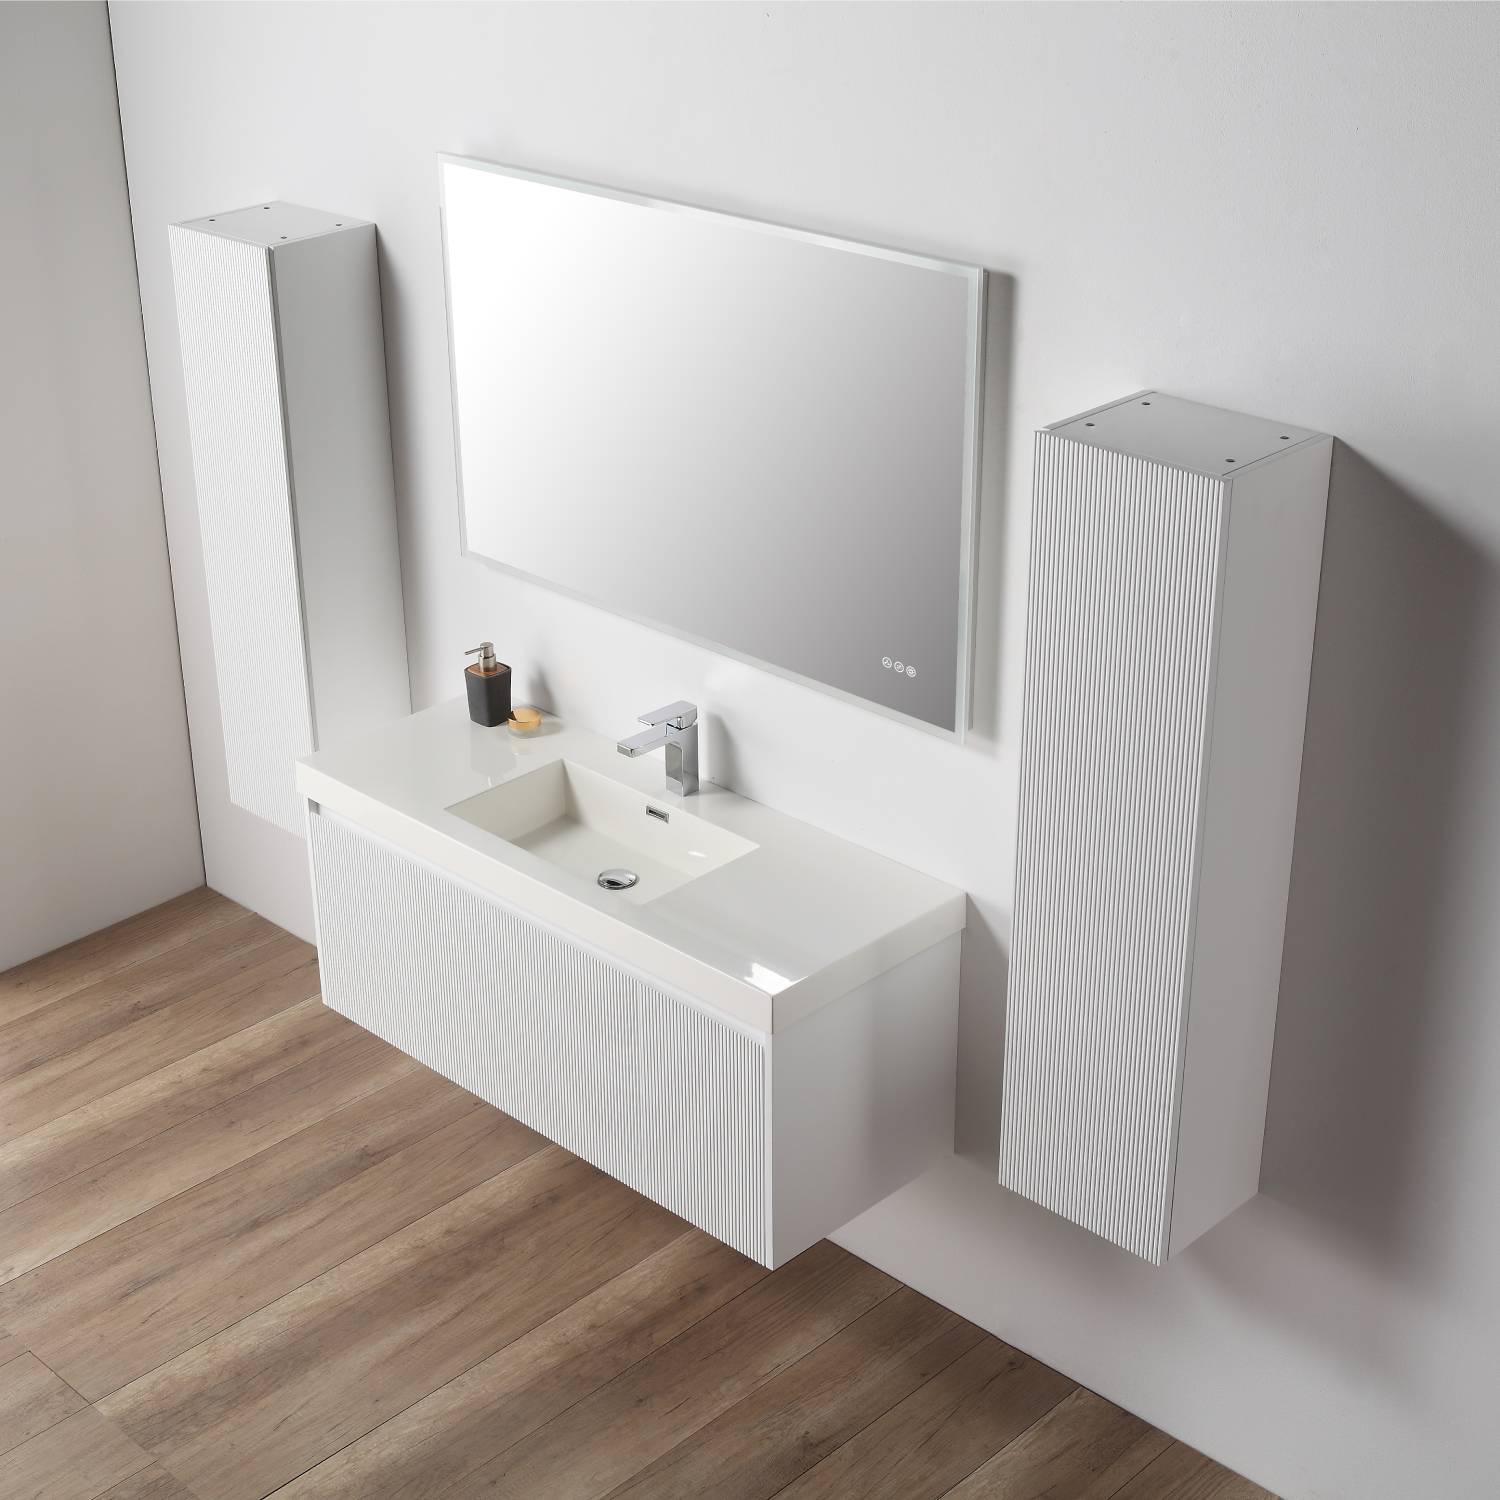 Positano 48" Luxury Single Vanity with Acrylic Sink